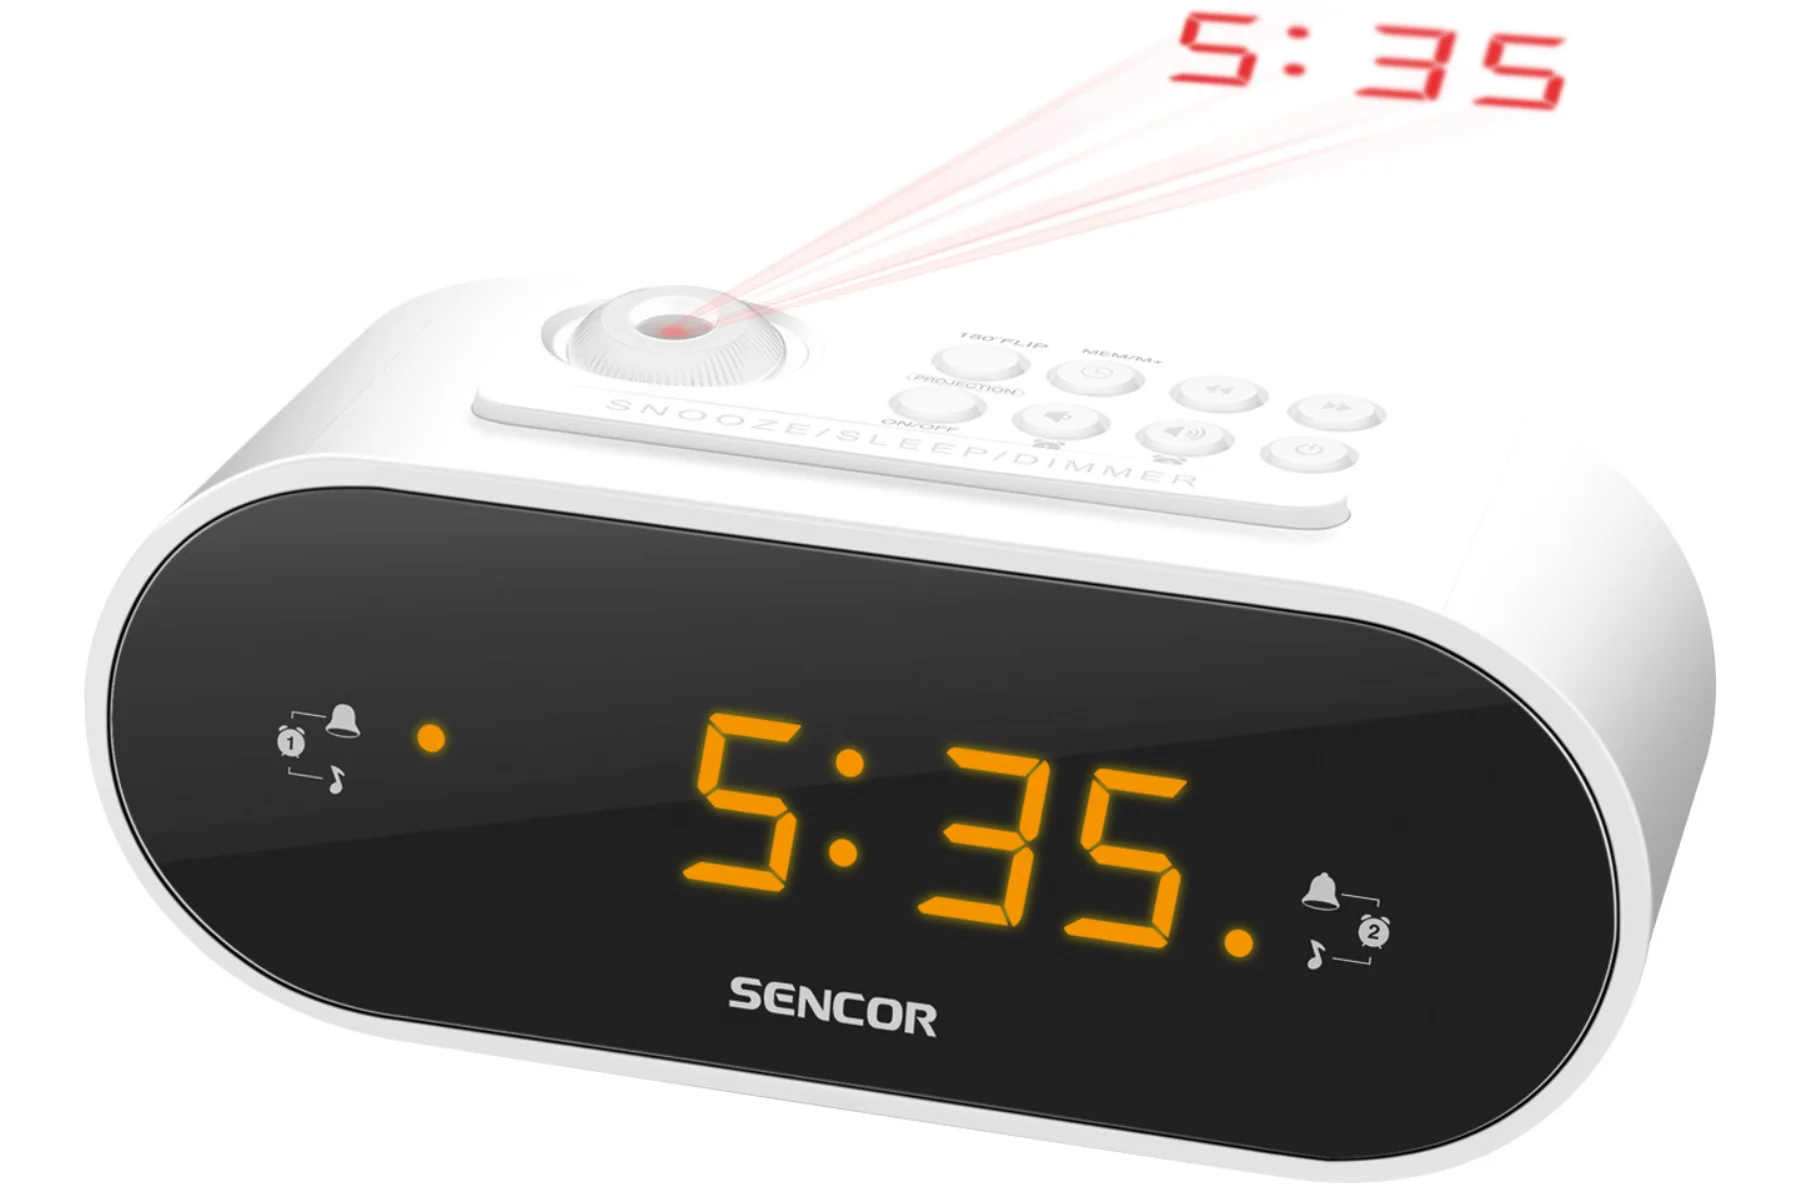 Rádiobudík Sencor SRC 3100 W spolahlivost moznosti